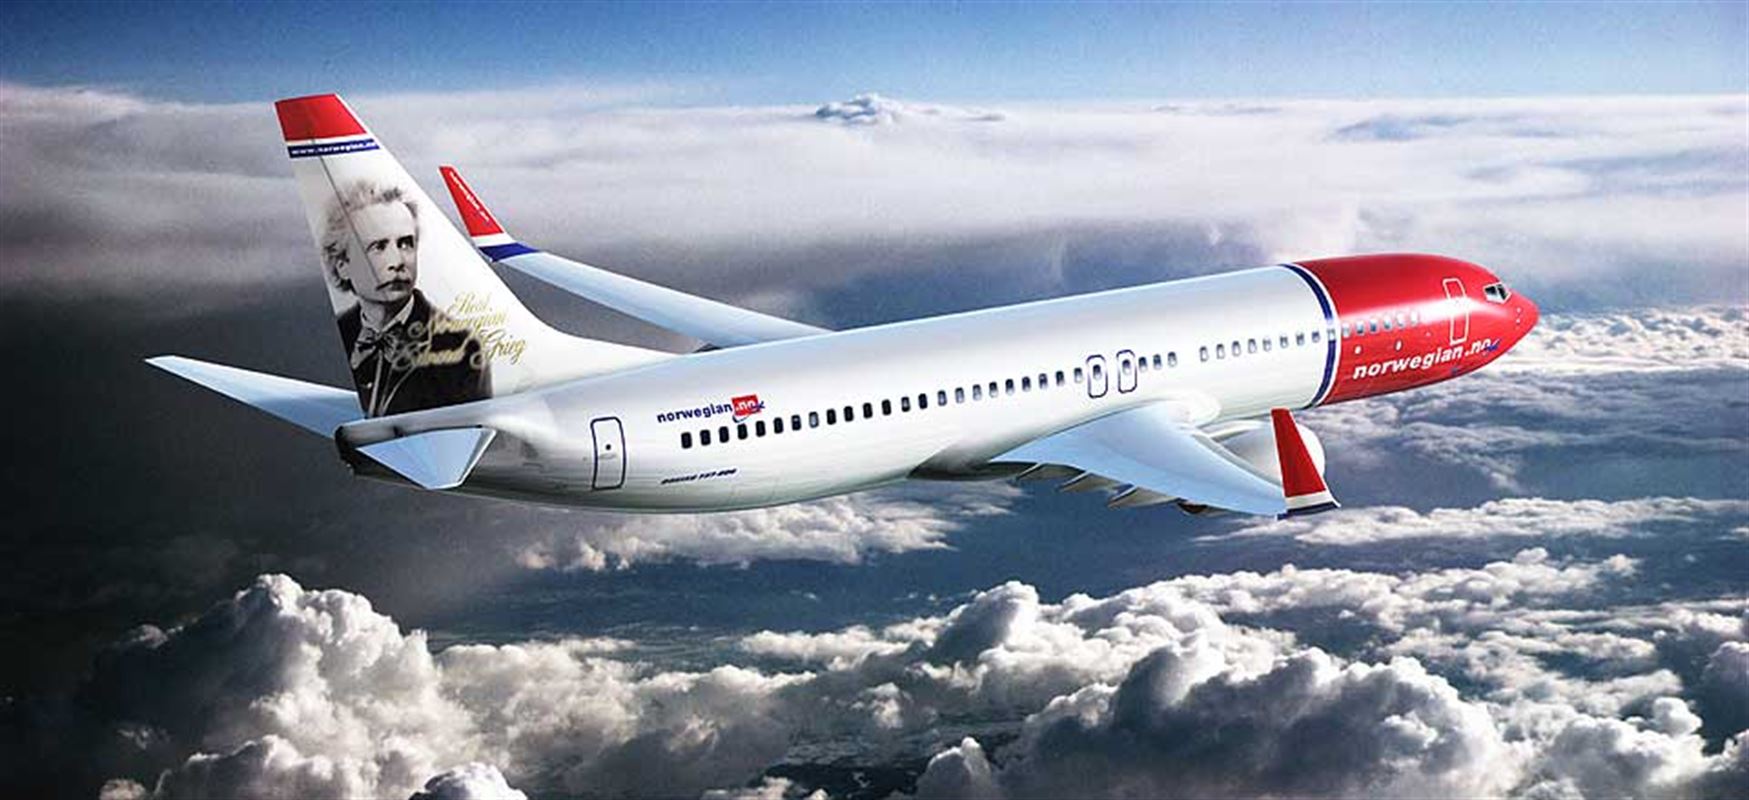 Norwegian Air Shuttle uzun mesafeli uçuşları iptal ediyor